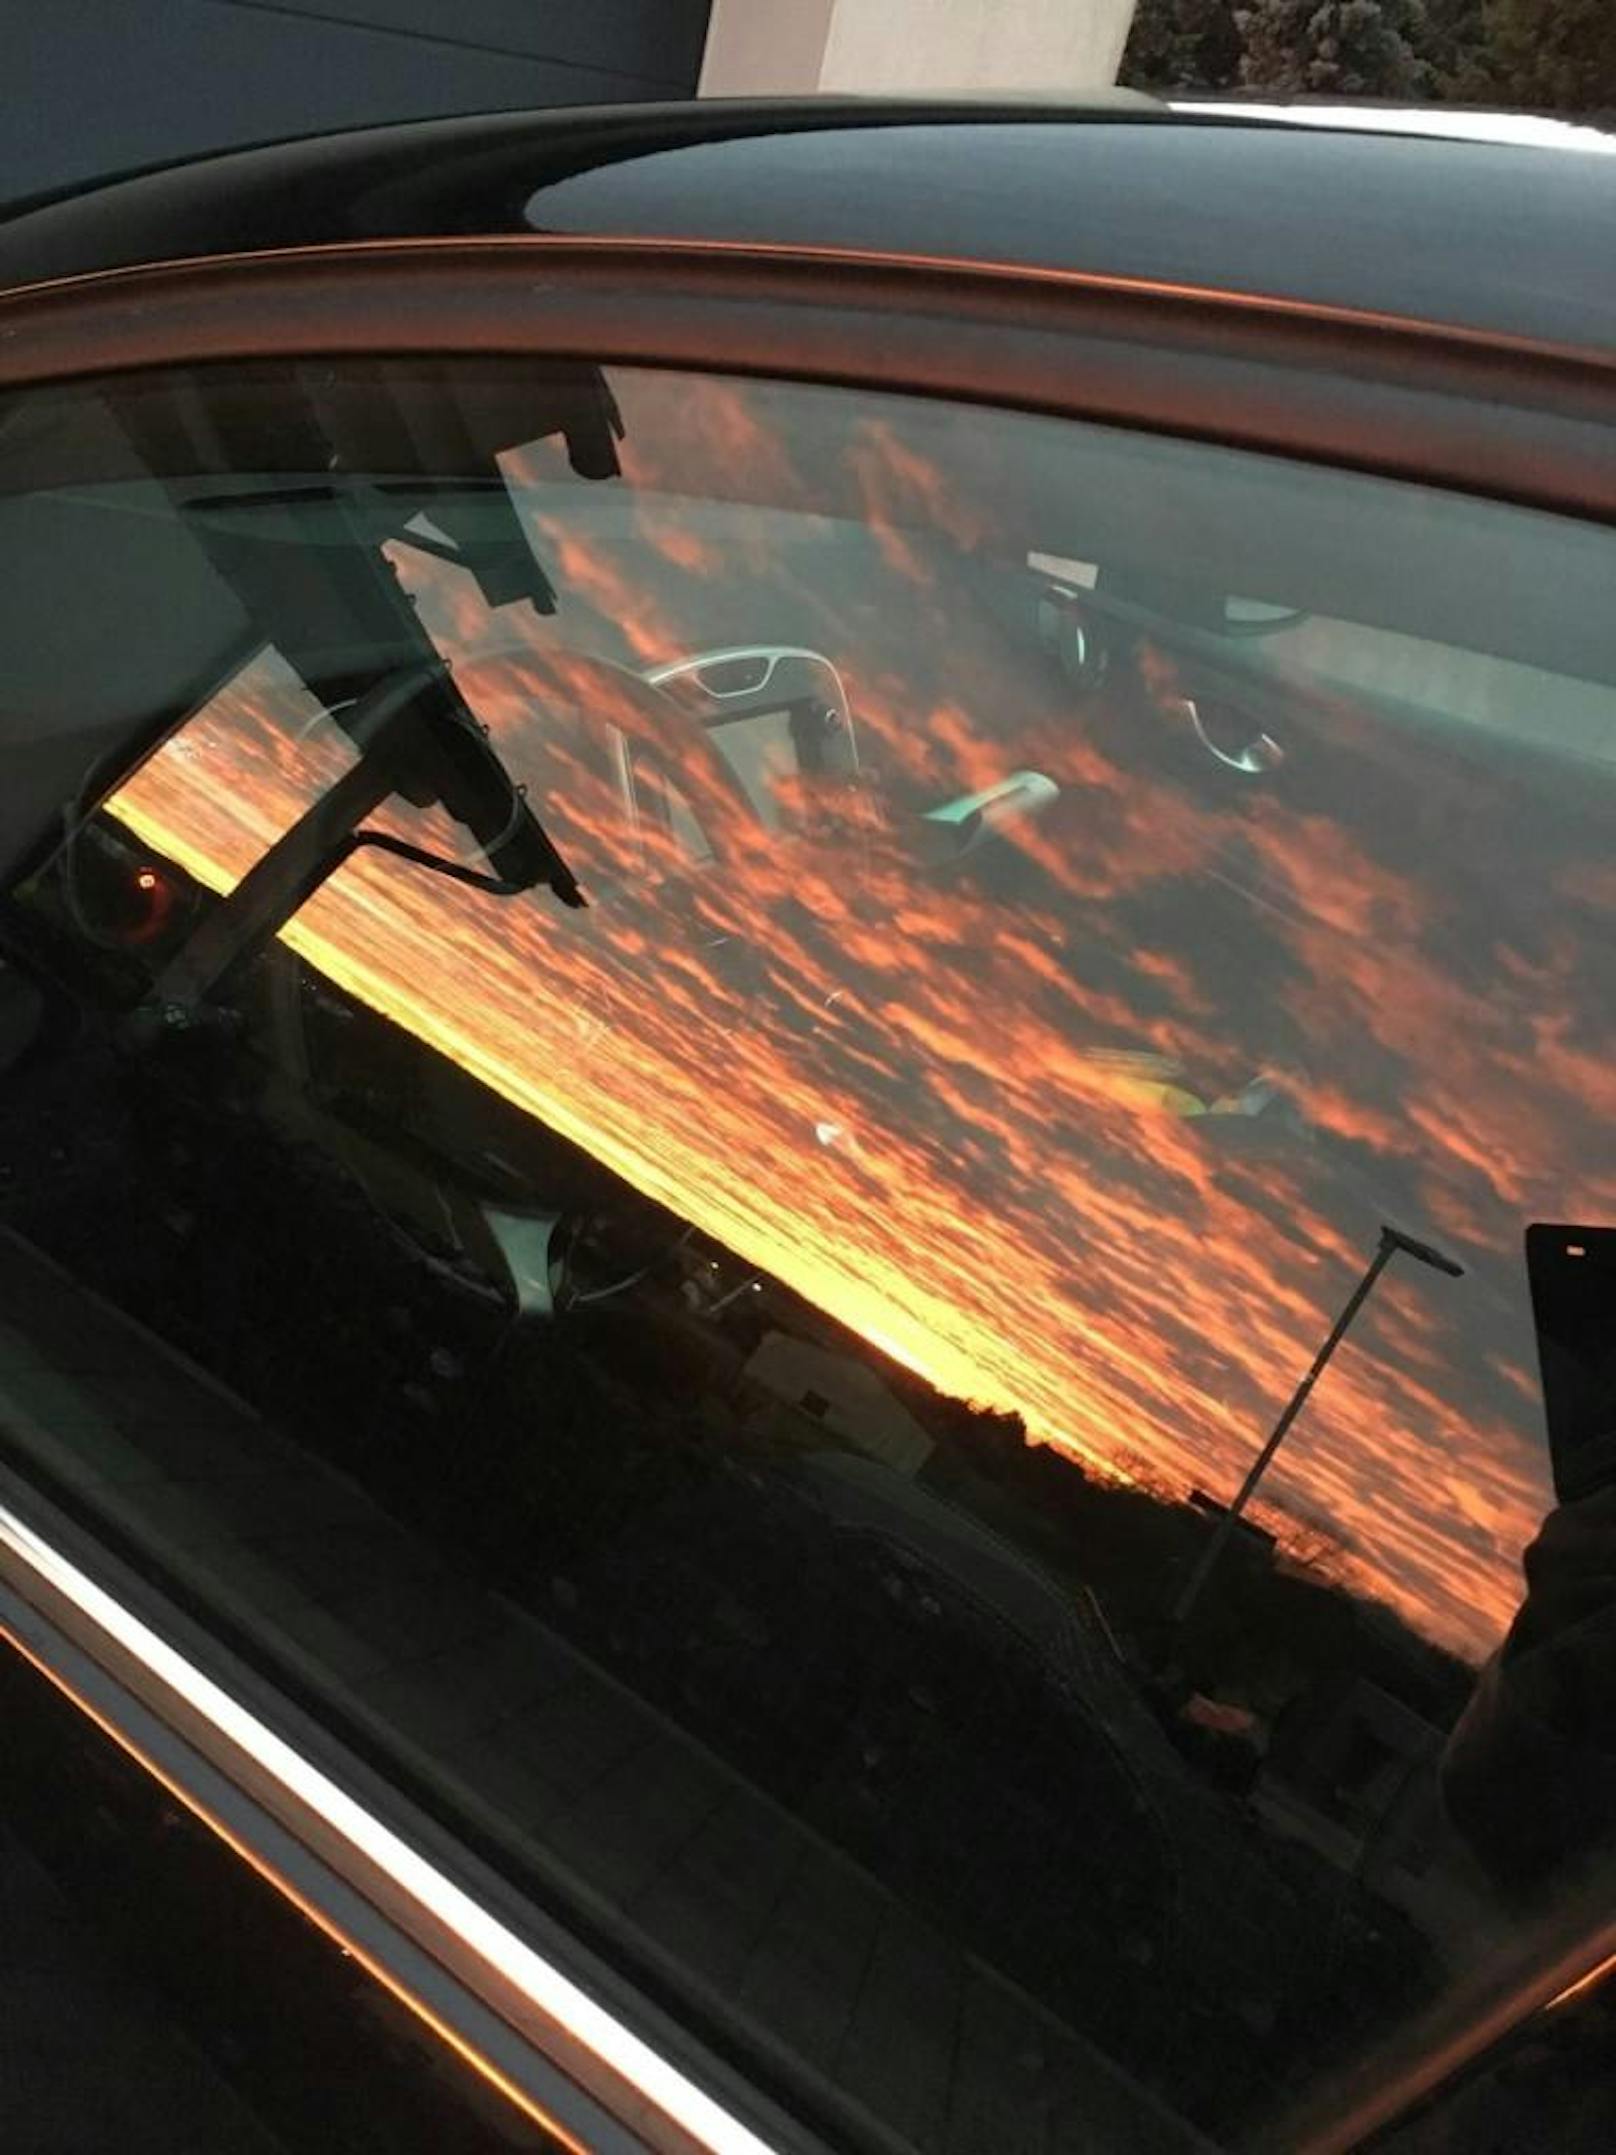 "Der Sonnenaufgang spiegelt sich im Fenster meines Autos."